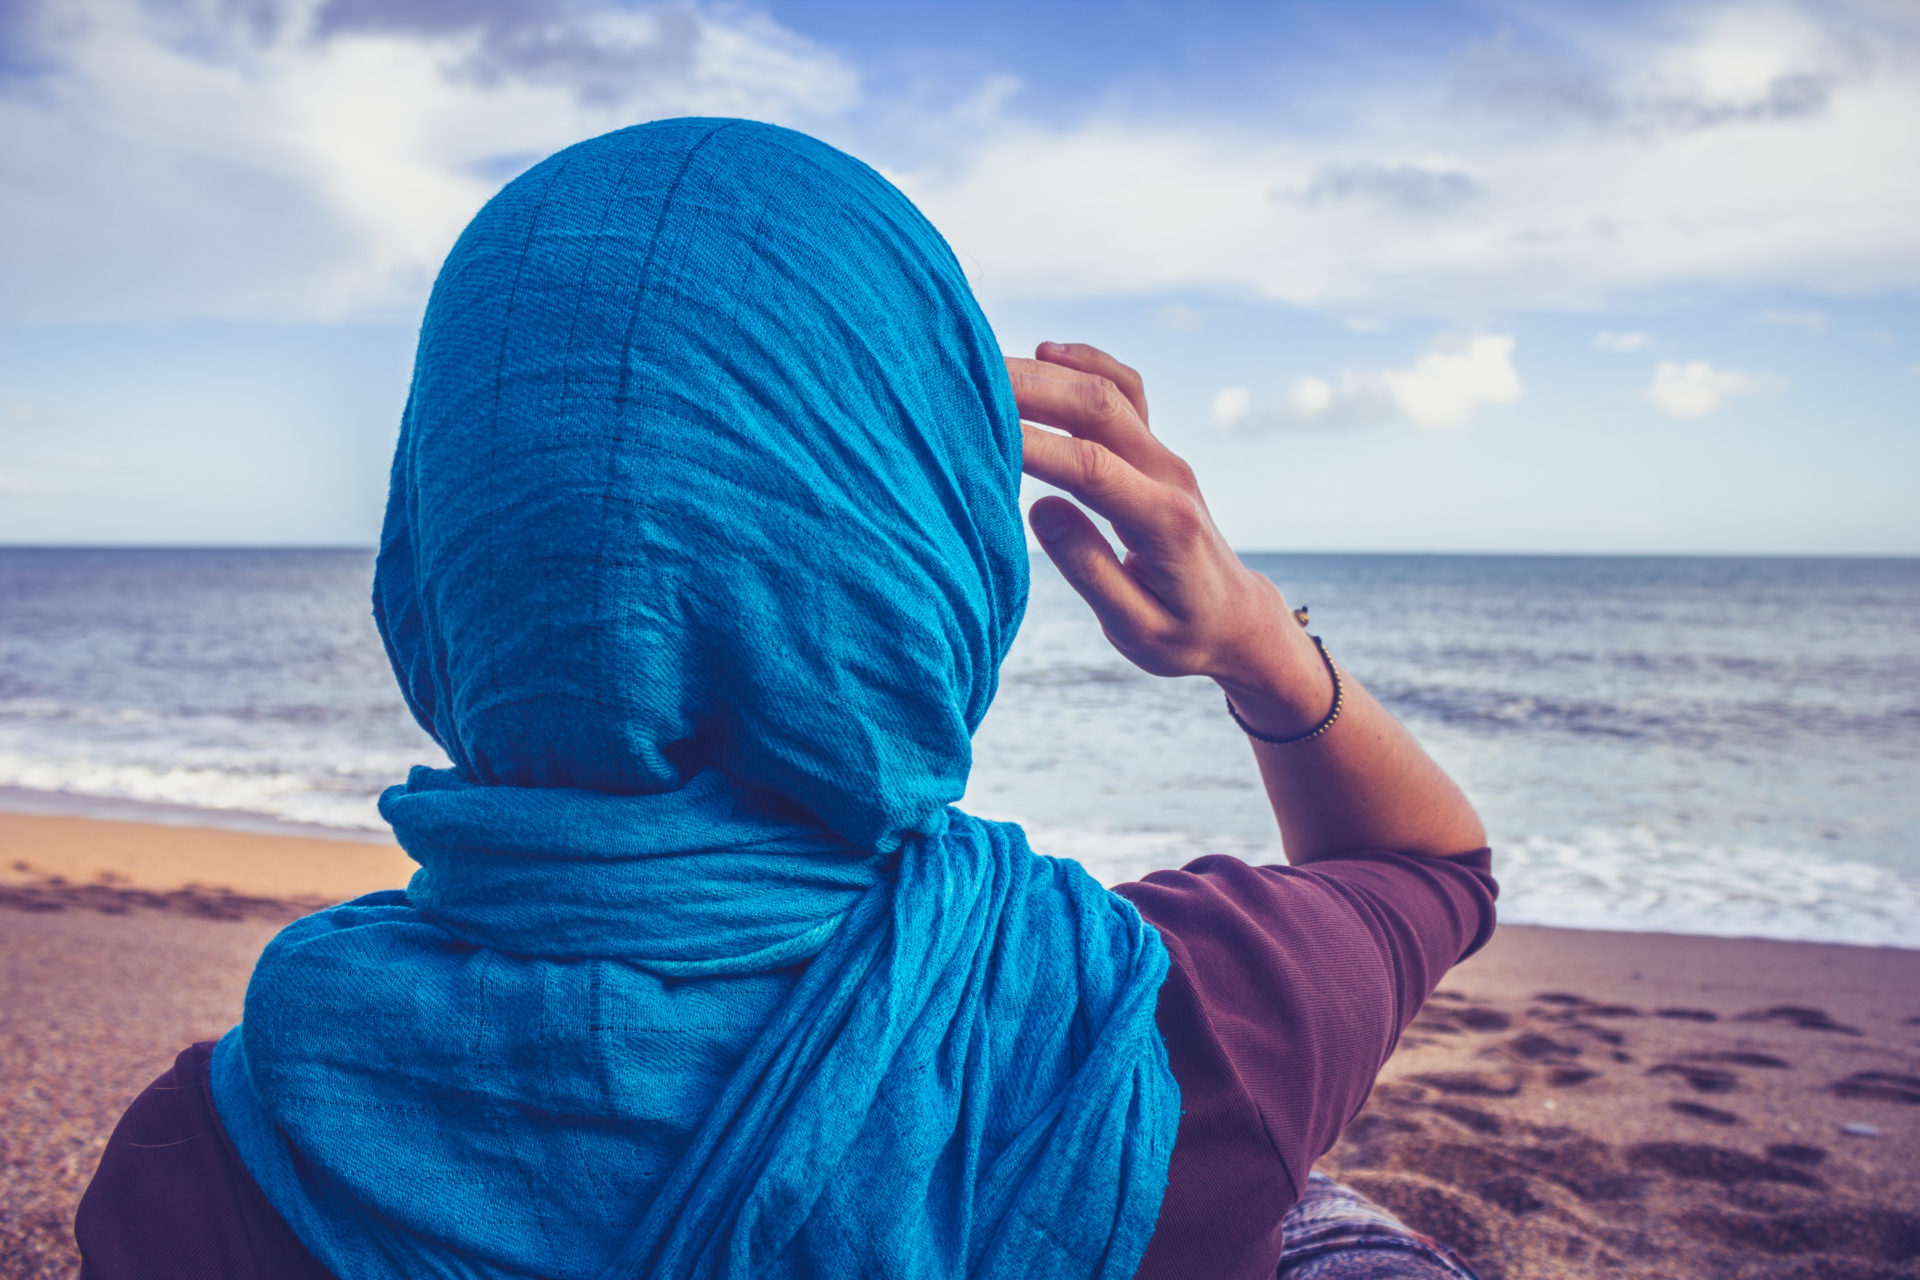 Abercrombie Hijab Lawsuit Final Chapter Written